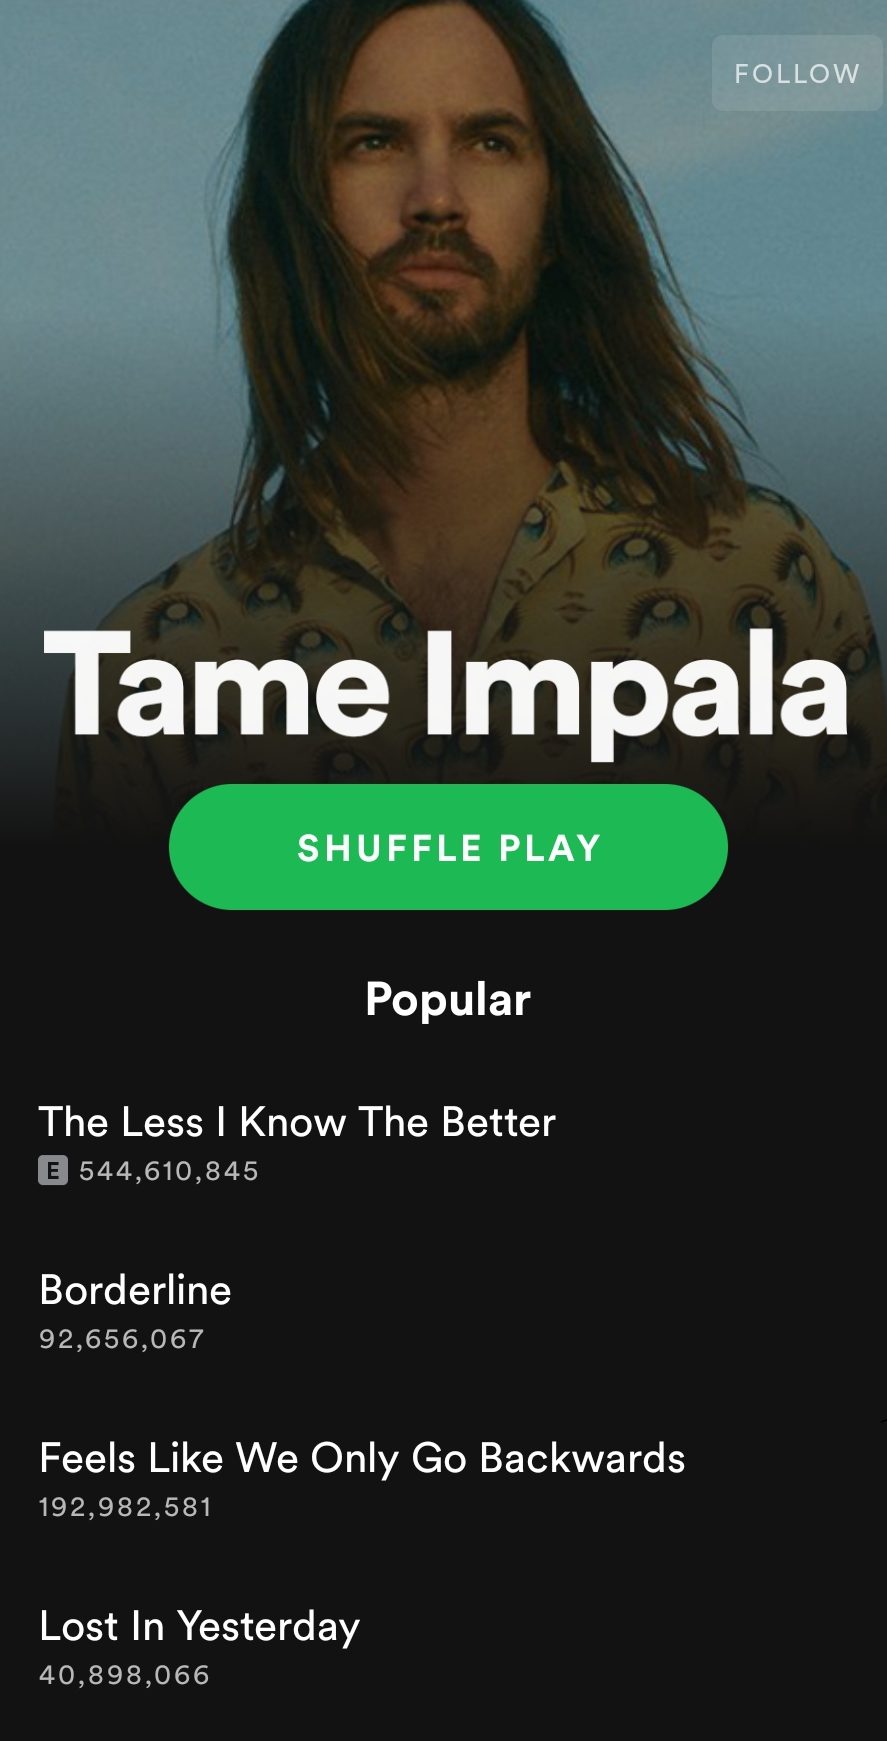 Posłuchaj australijskiego zespołu - Tame Impala na Spotify